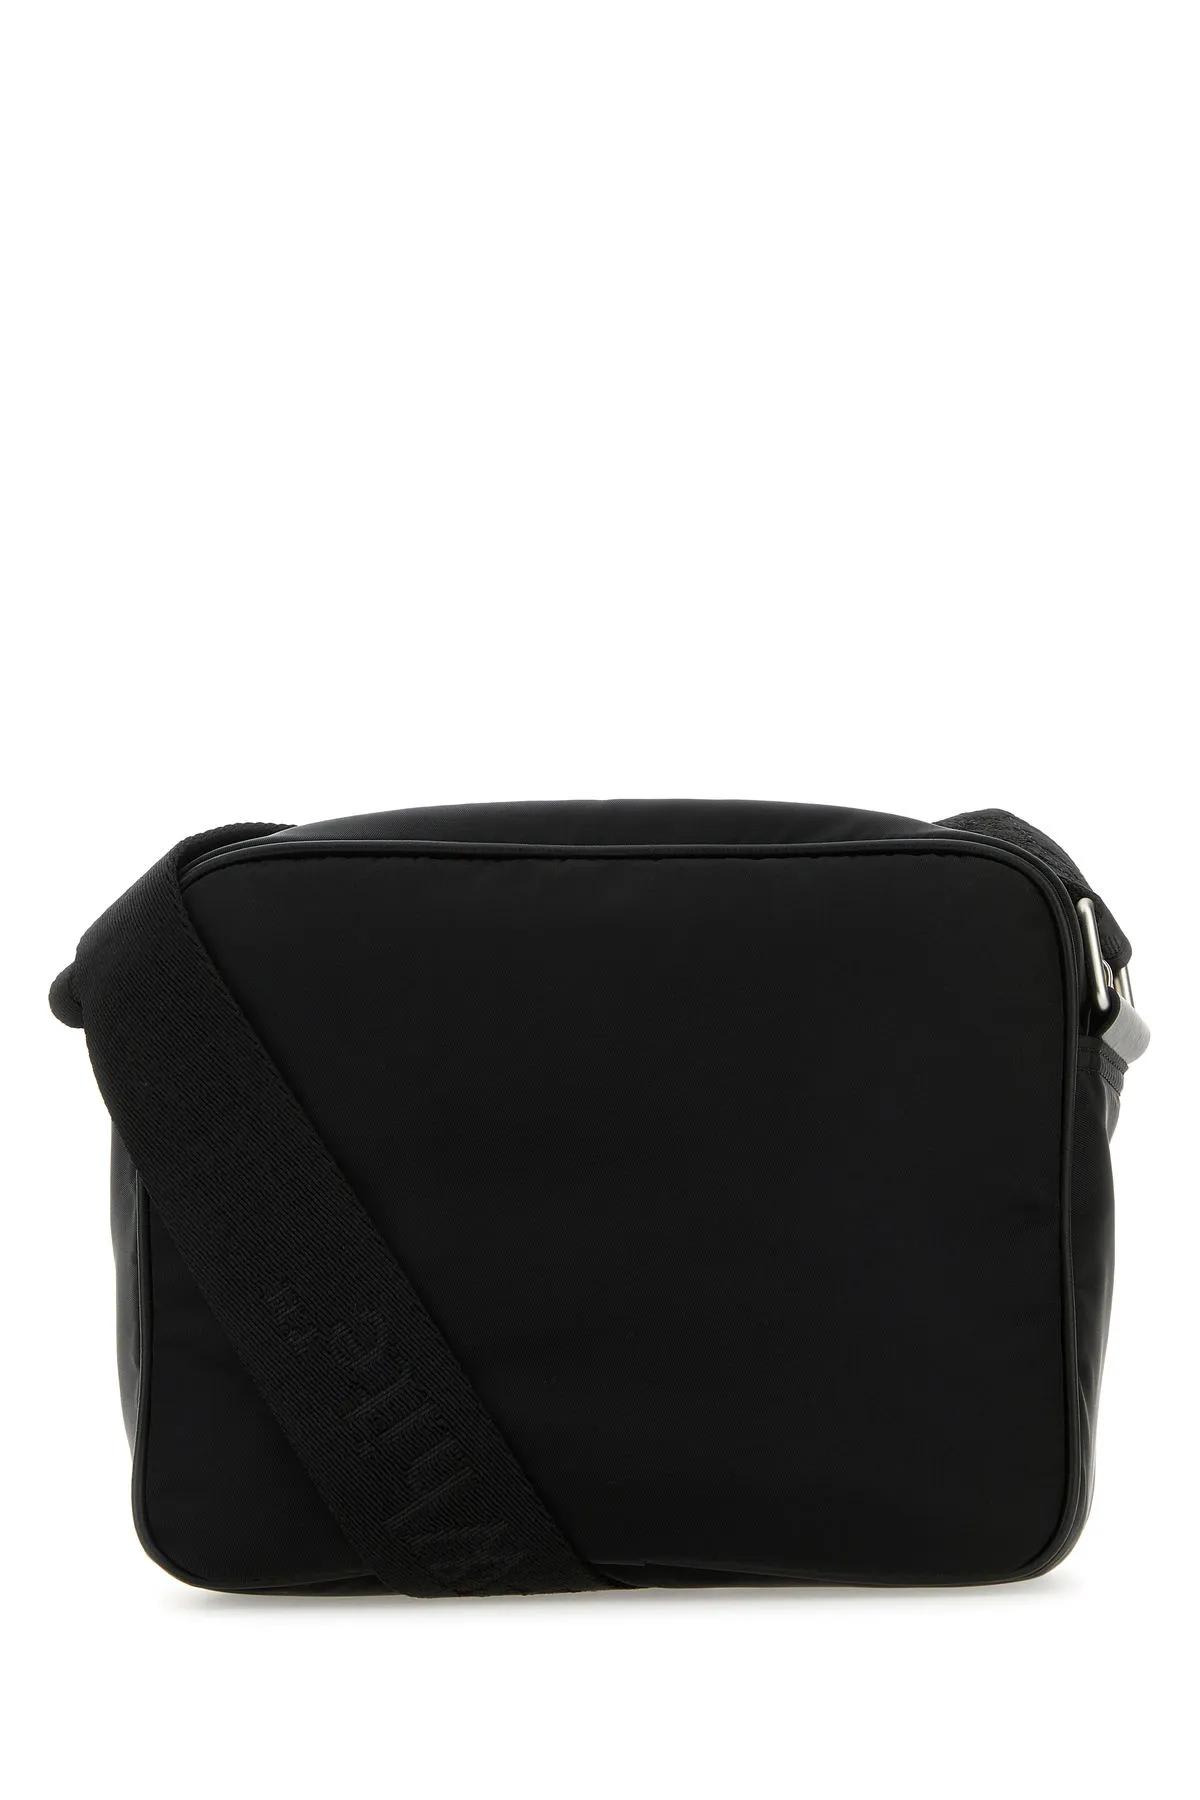 Shop Off-white Black Nylon Core Crossbody Bag In Nero